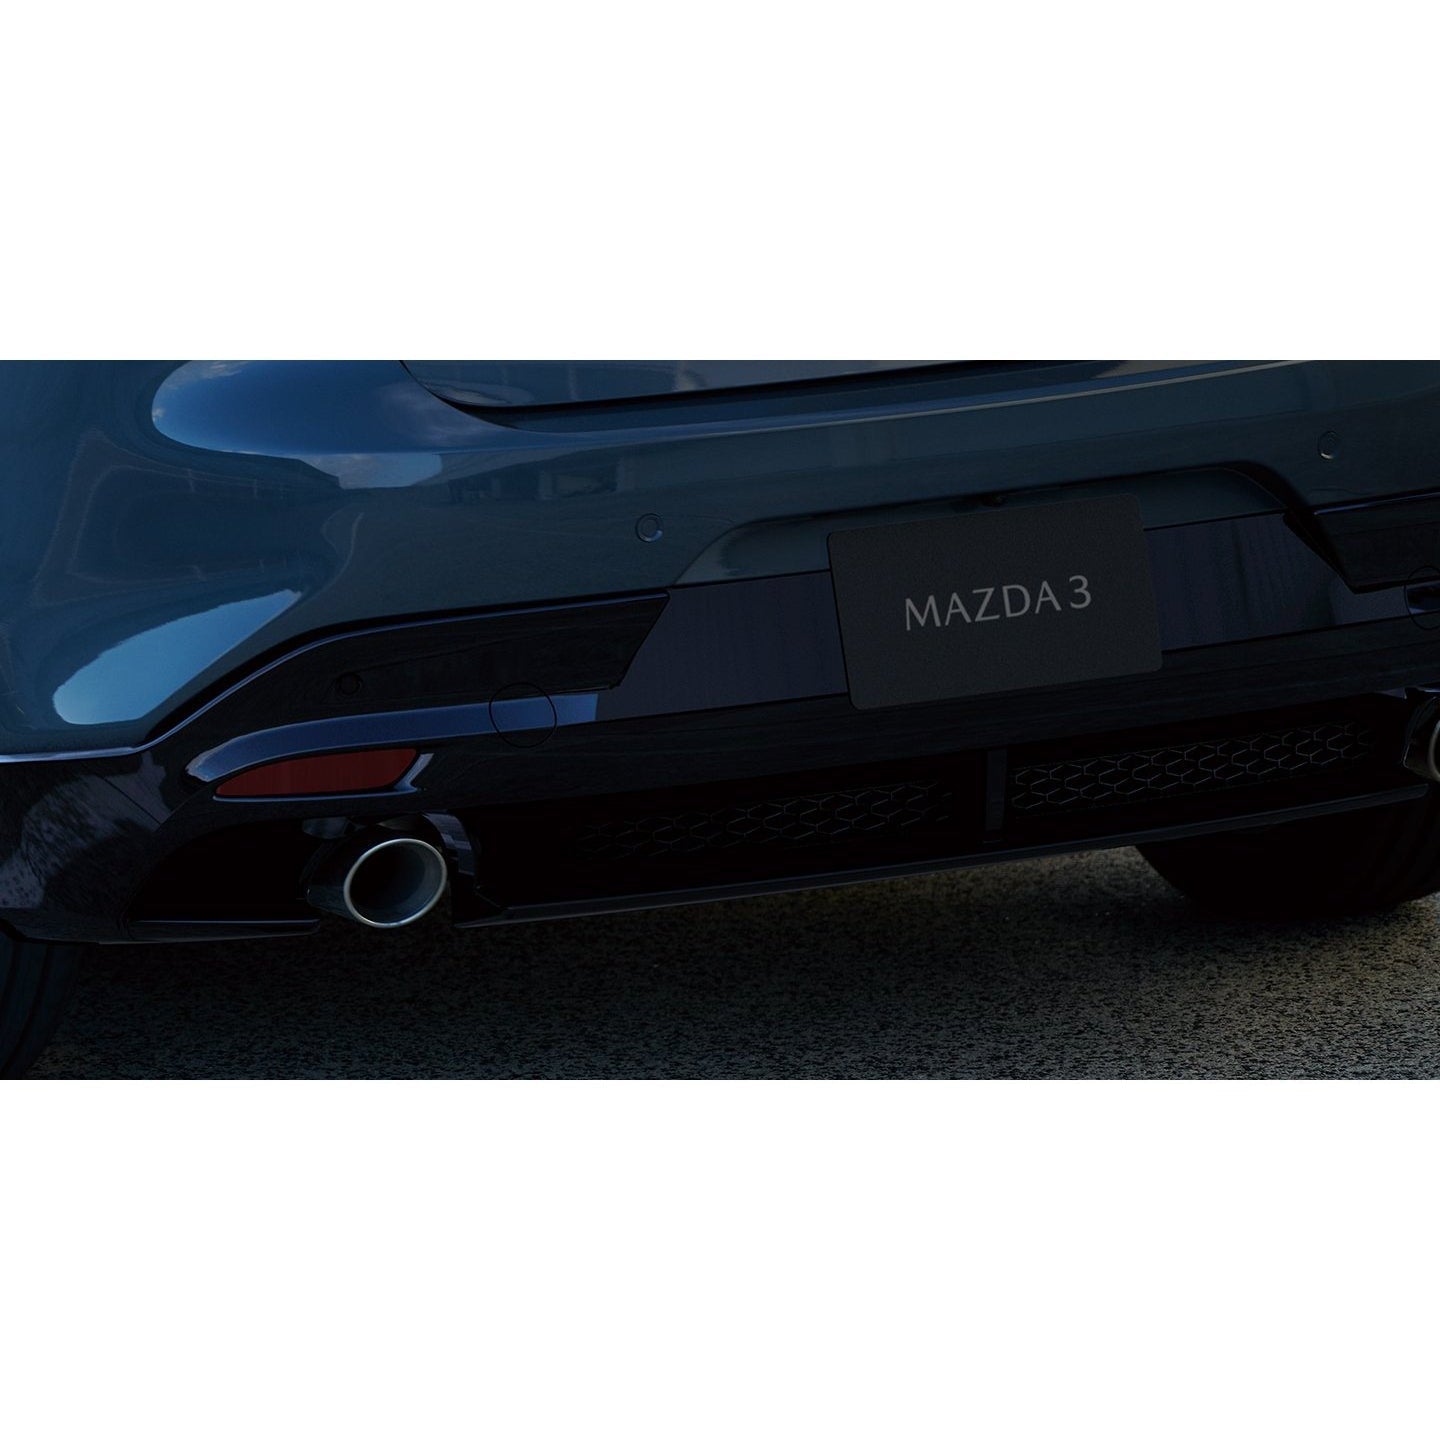 Aero Kit - Rear Under Spoiler (Brilliant Black), Mazda3 Hatchback (20 -  Mazda Shop